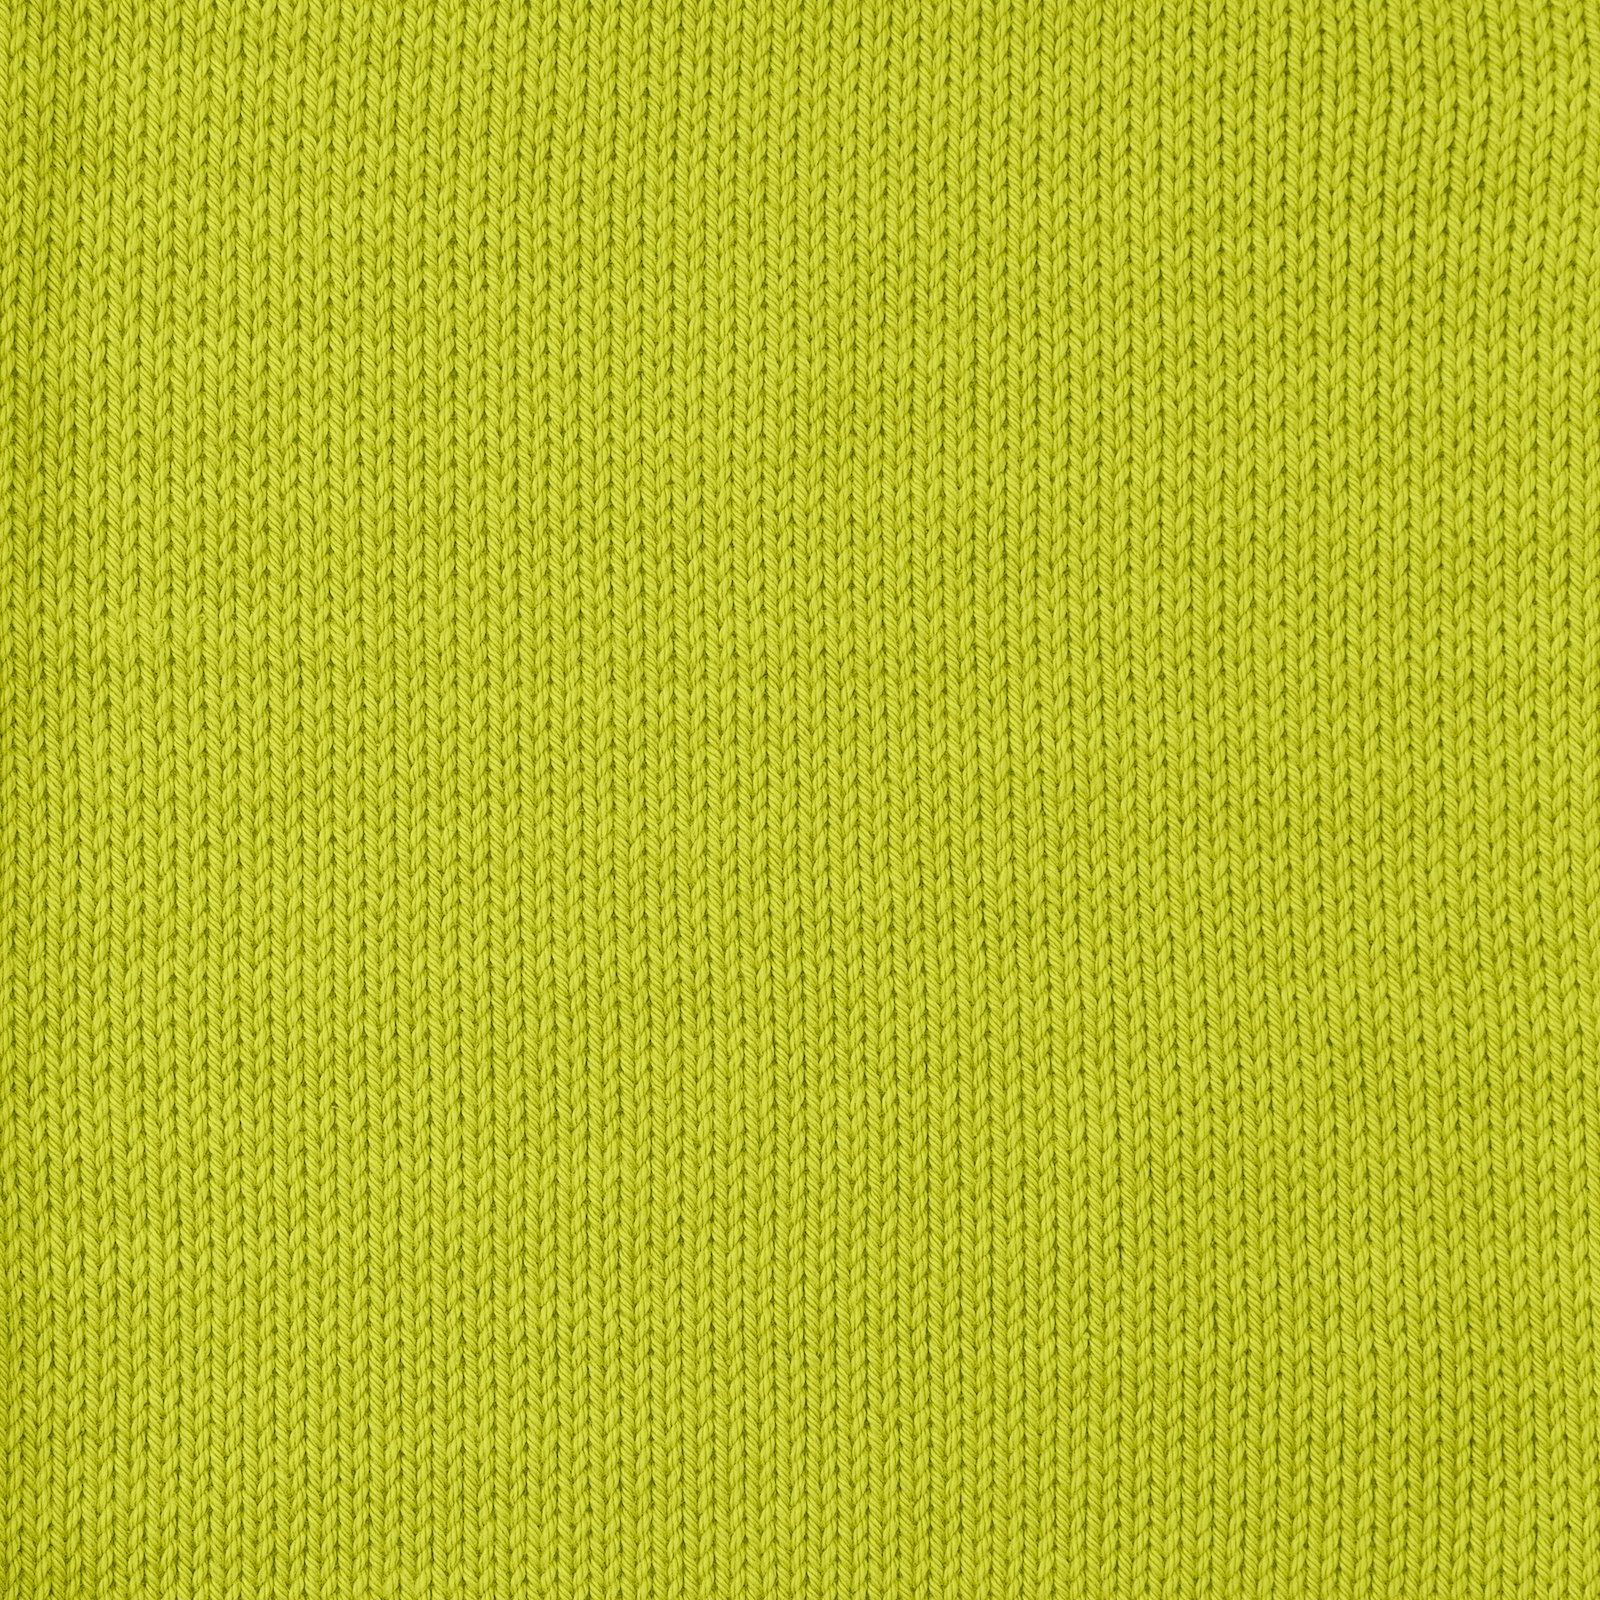 FRAYA, 100% cotton 8/4  yarn  "Colourful", lime 90060046_sskit